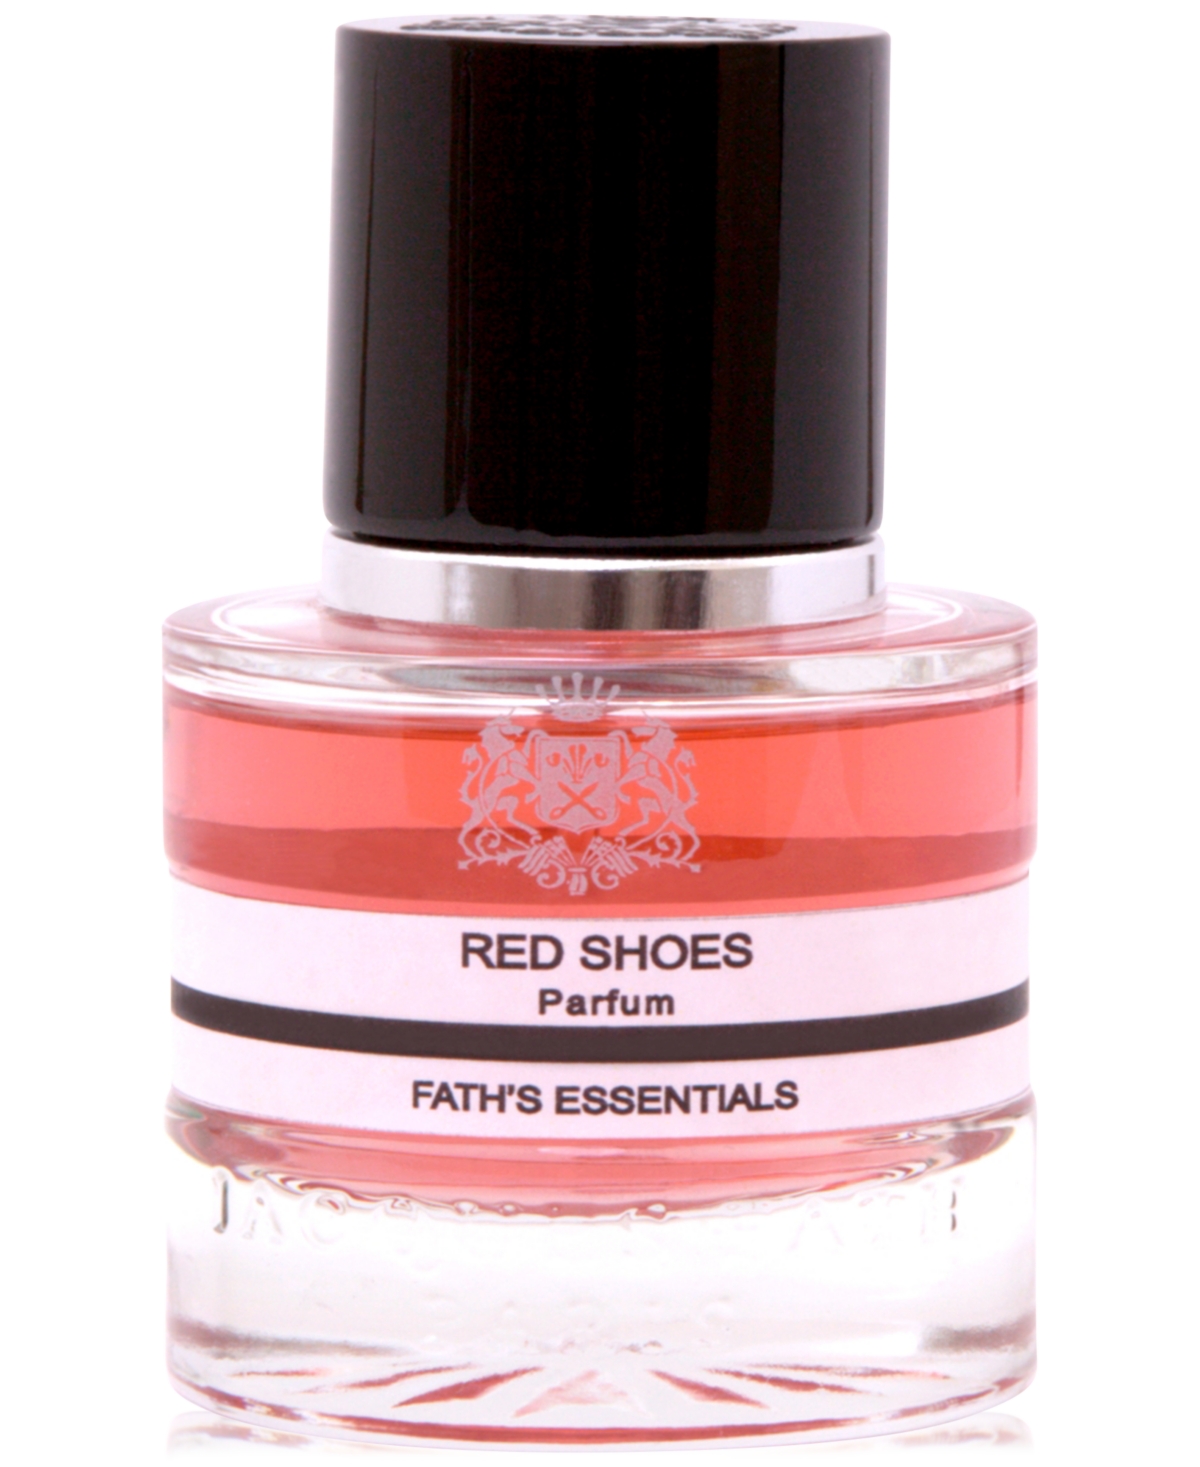 Red Shoes Parfum, 1.7 oz.